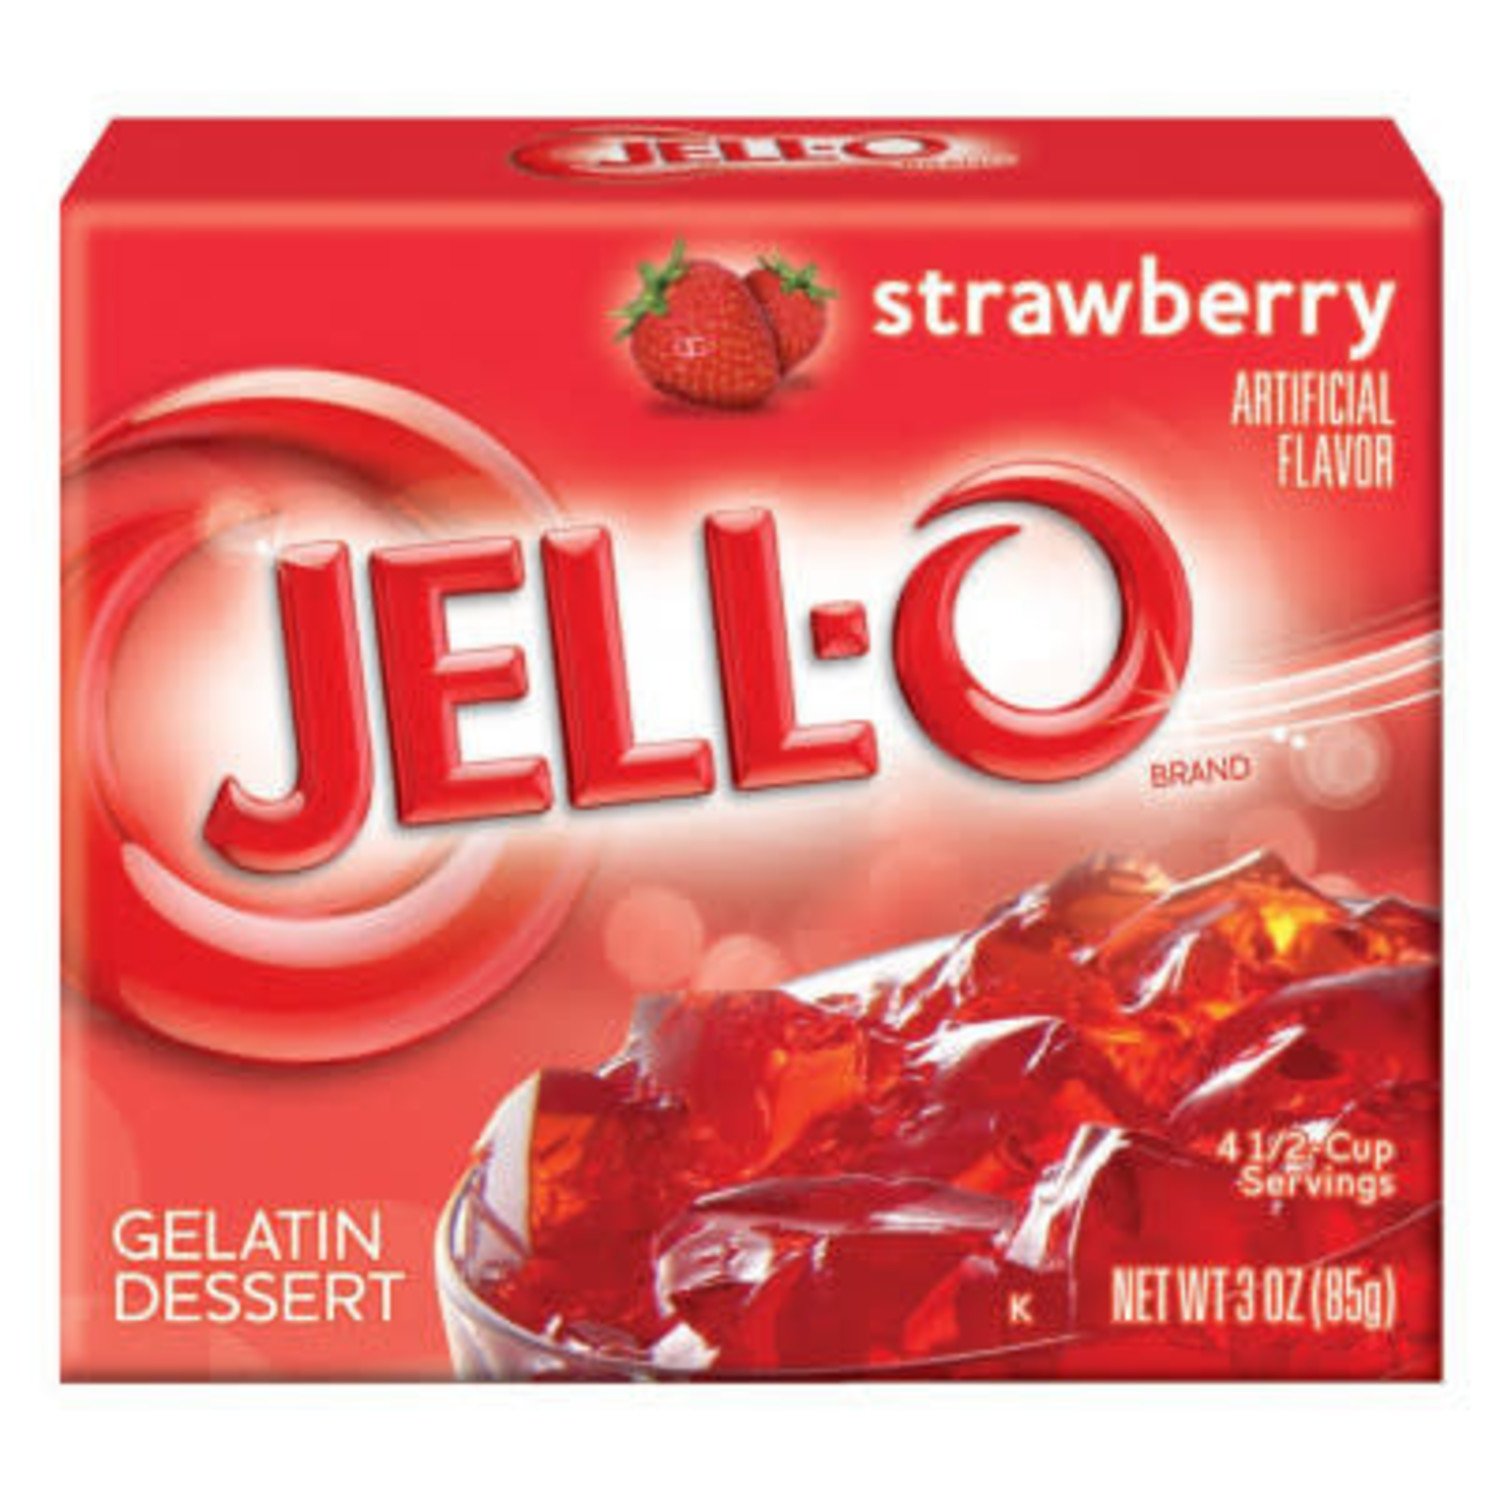 JELL-O ジェロー ゼリーの素 ストロベリー 「オンラインストア直営店